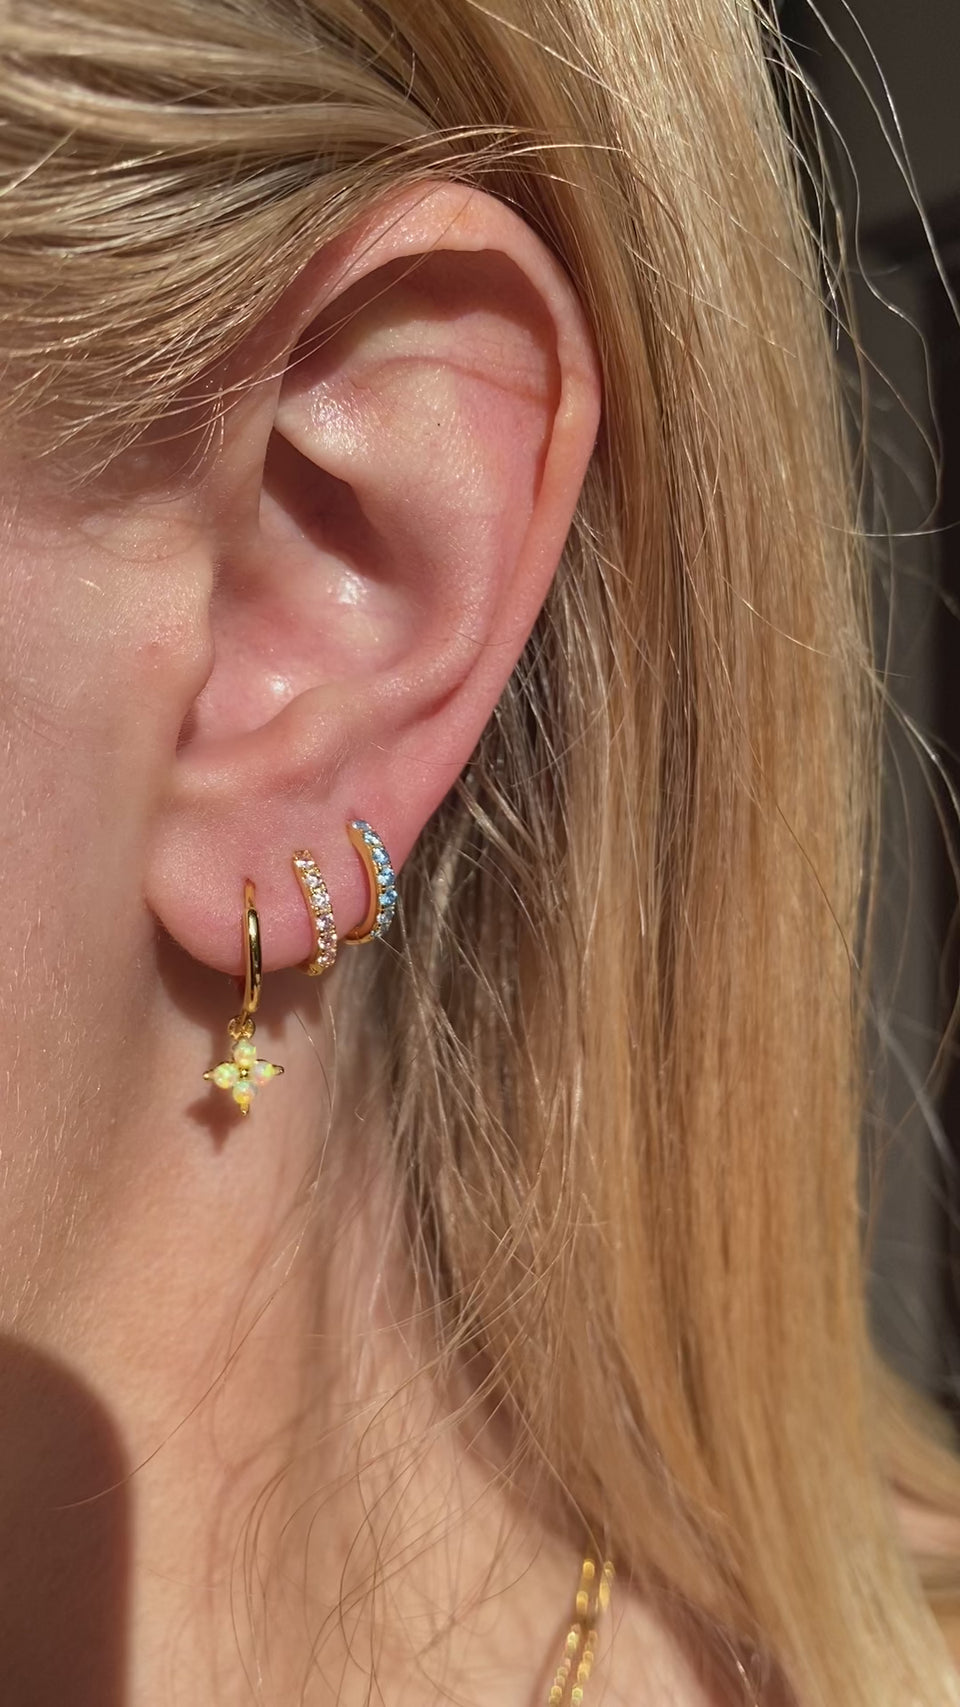 opal earrings, opal ear party set, october birthstone earrings